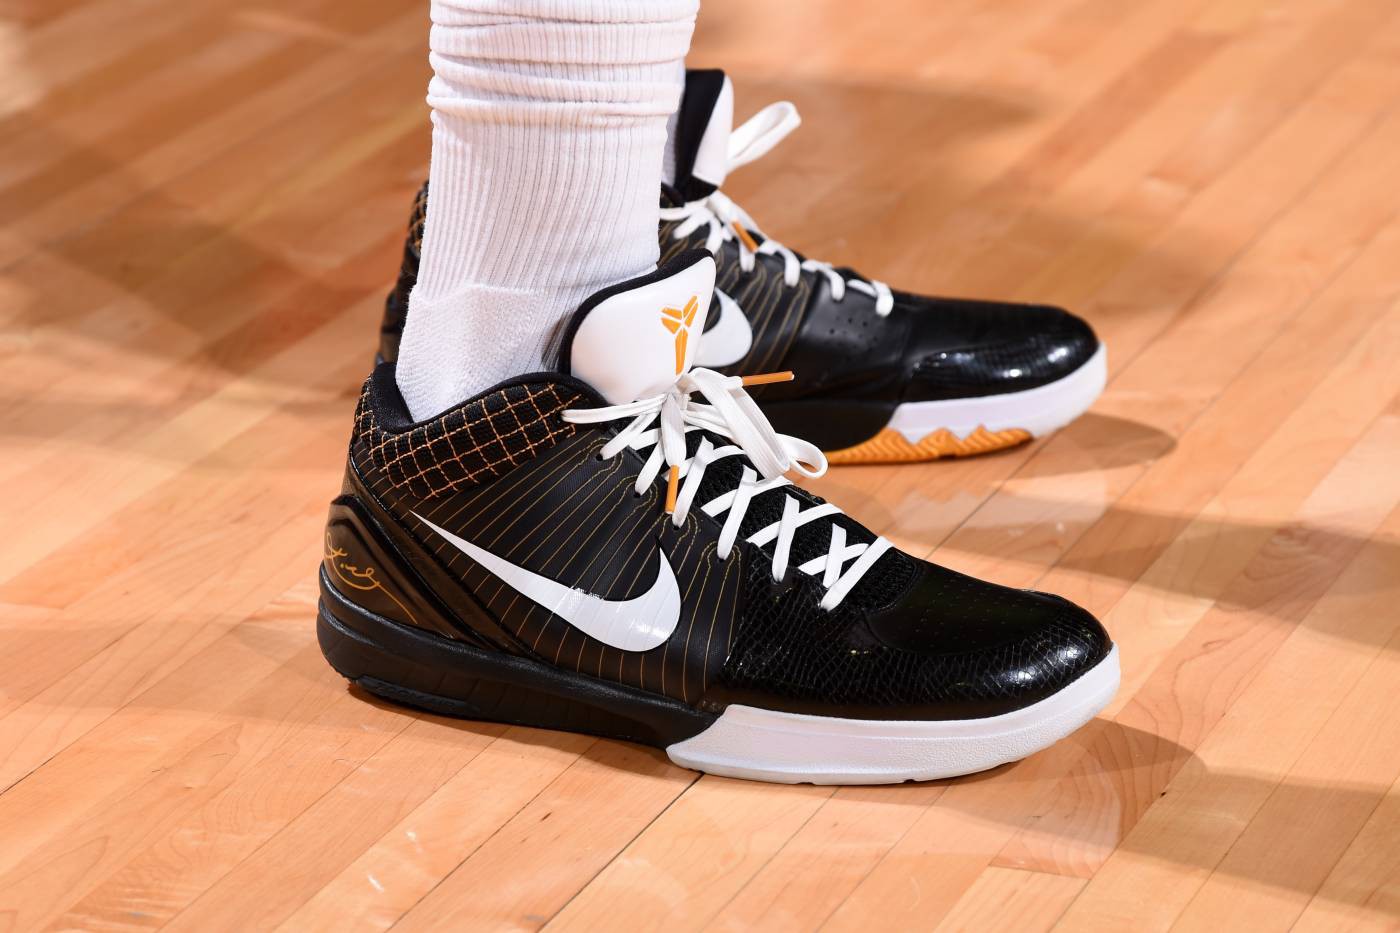 Chi tiết và đầy đủ các mẫu giày khủng của Thánh giày P.J. Tucker đã mang tại NBA Playoffs 2018 - Ảnh 26.